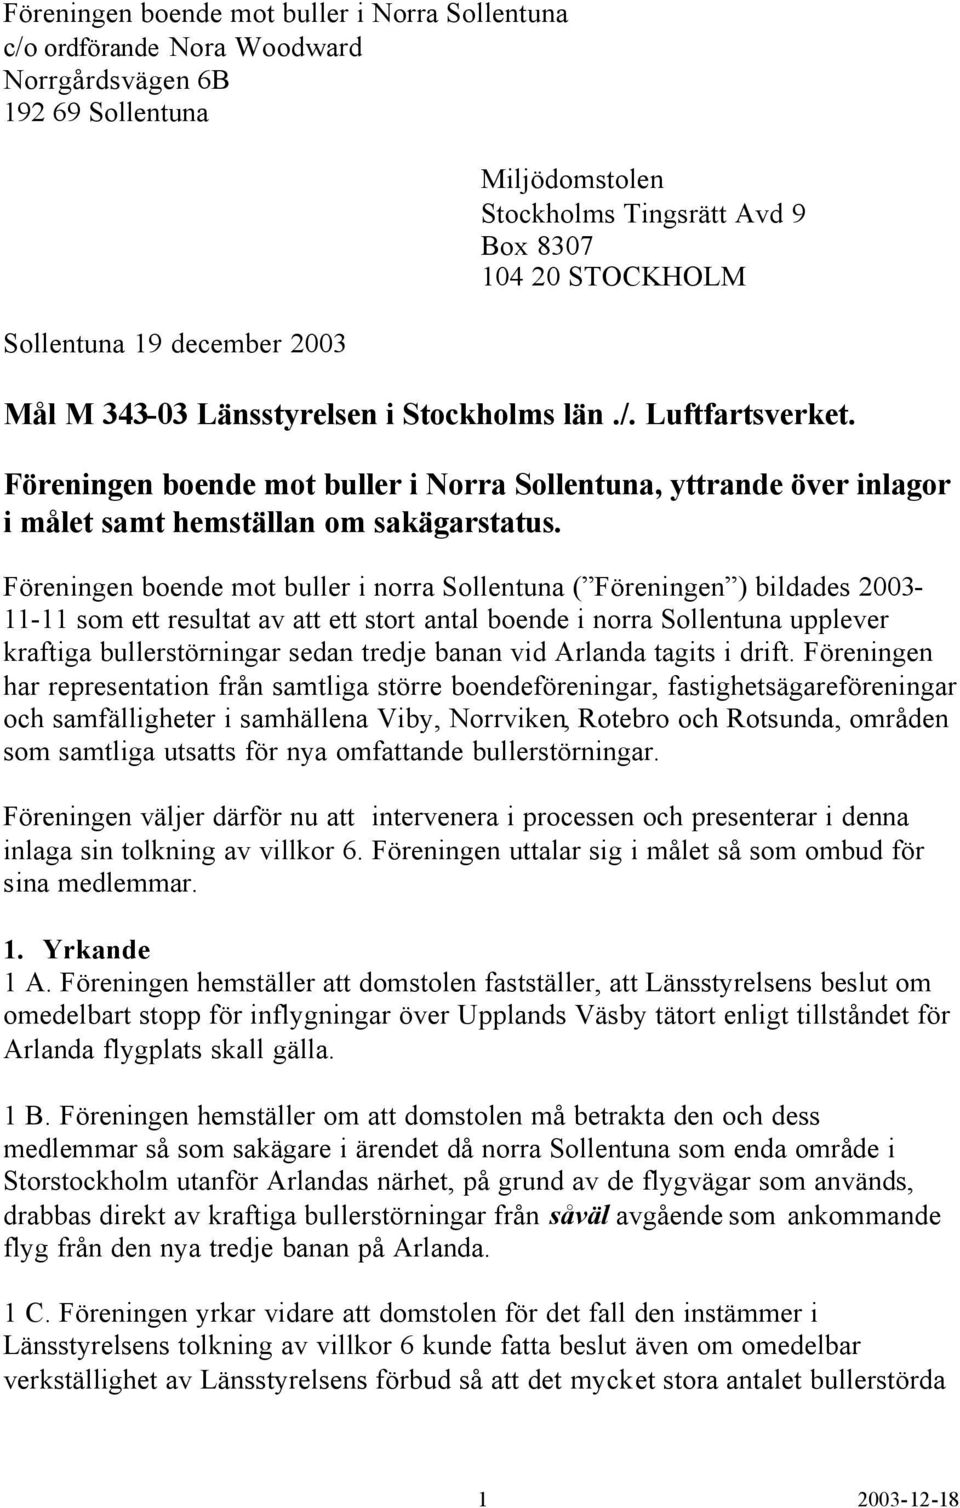 Föreningen boende mot buller i norra Sollentuna ( Föreningen ) bildades 2003-11-11 som ett resultat av att ett stort antal boende i norra Sollentuna upplever kraftiga bullerstörningar sedan tredje